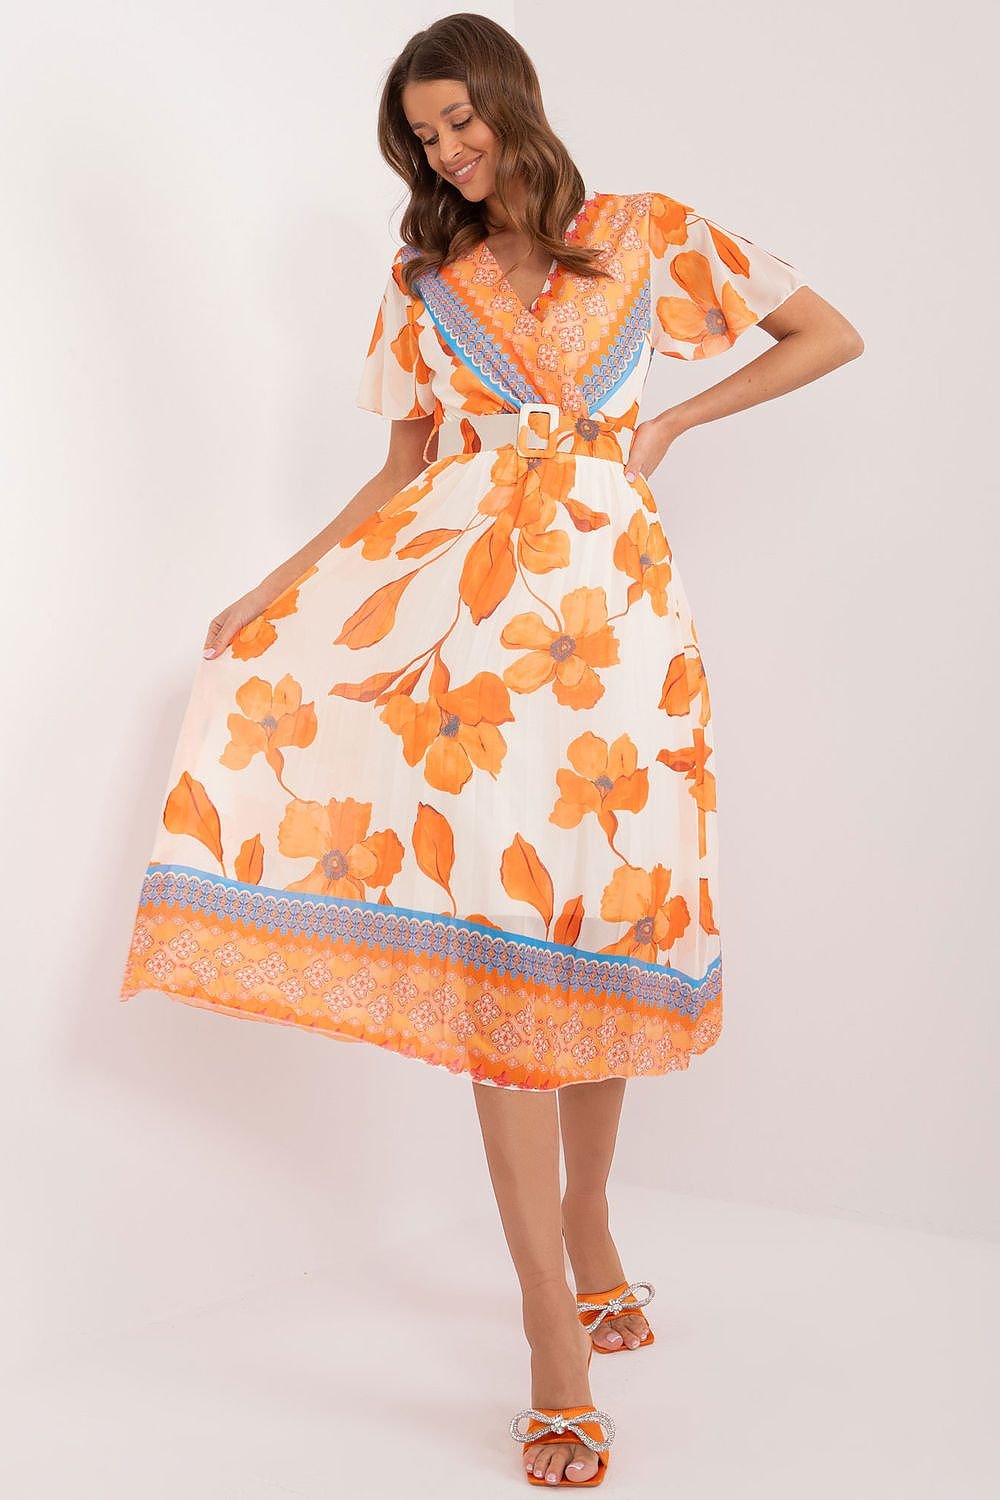 TEEK - Watercolor Flowers Dress DRESS TEEK MH orange One Size 